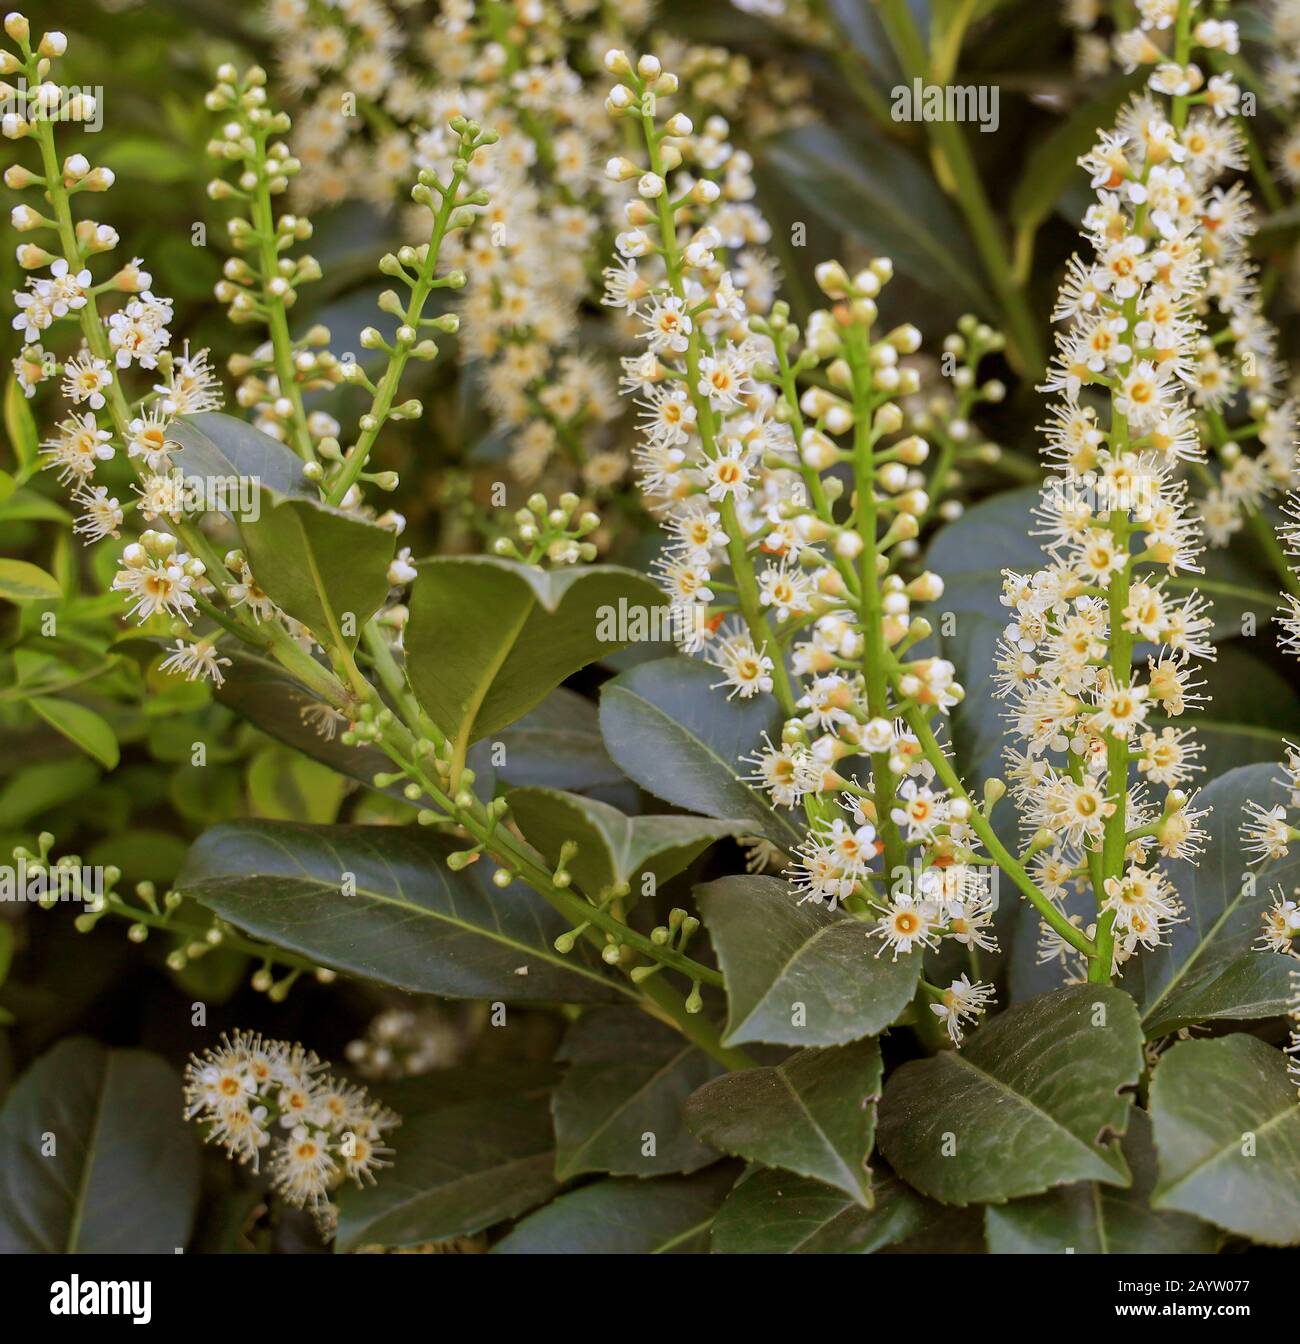 cherry-laurel (Prunus laurocerasus), flowering Cherry Laurel, German Wine Route Stock Photo